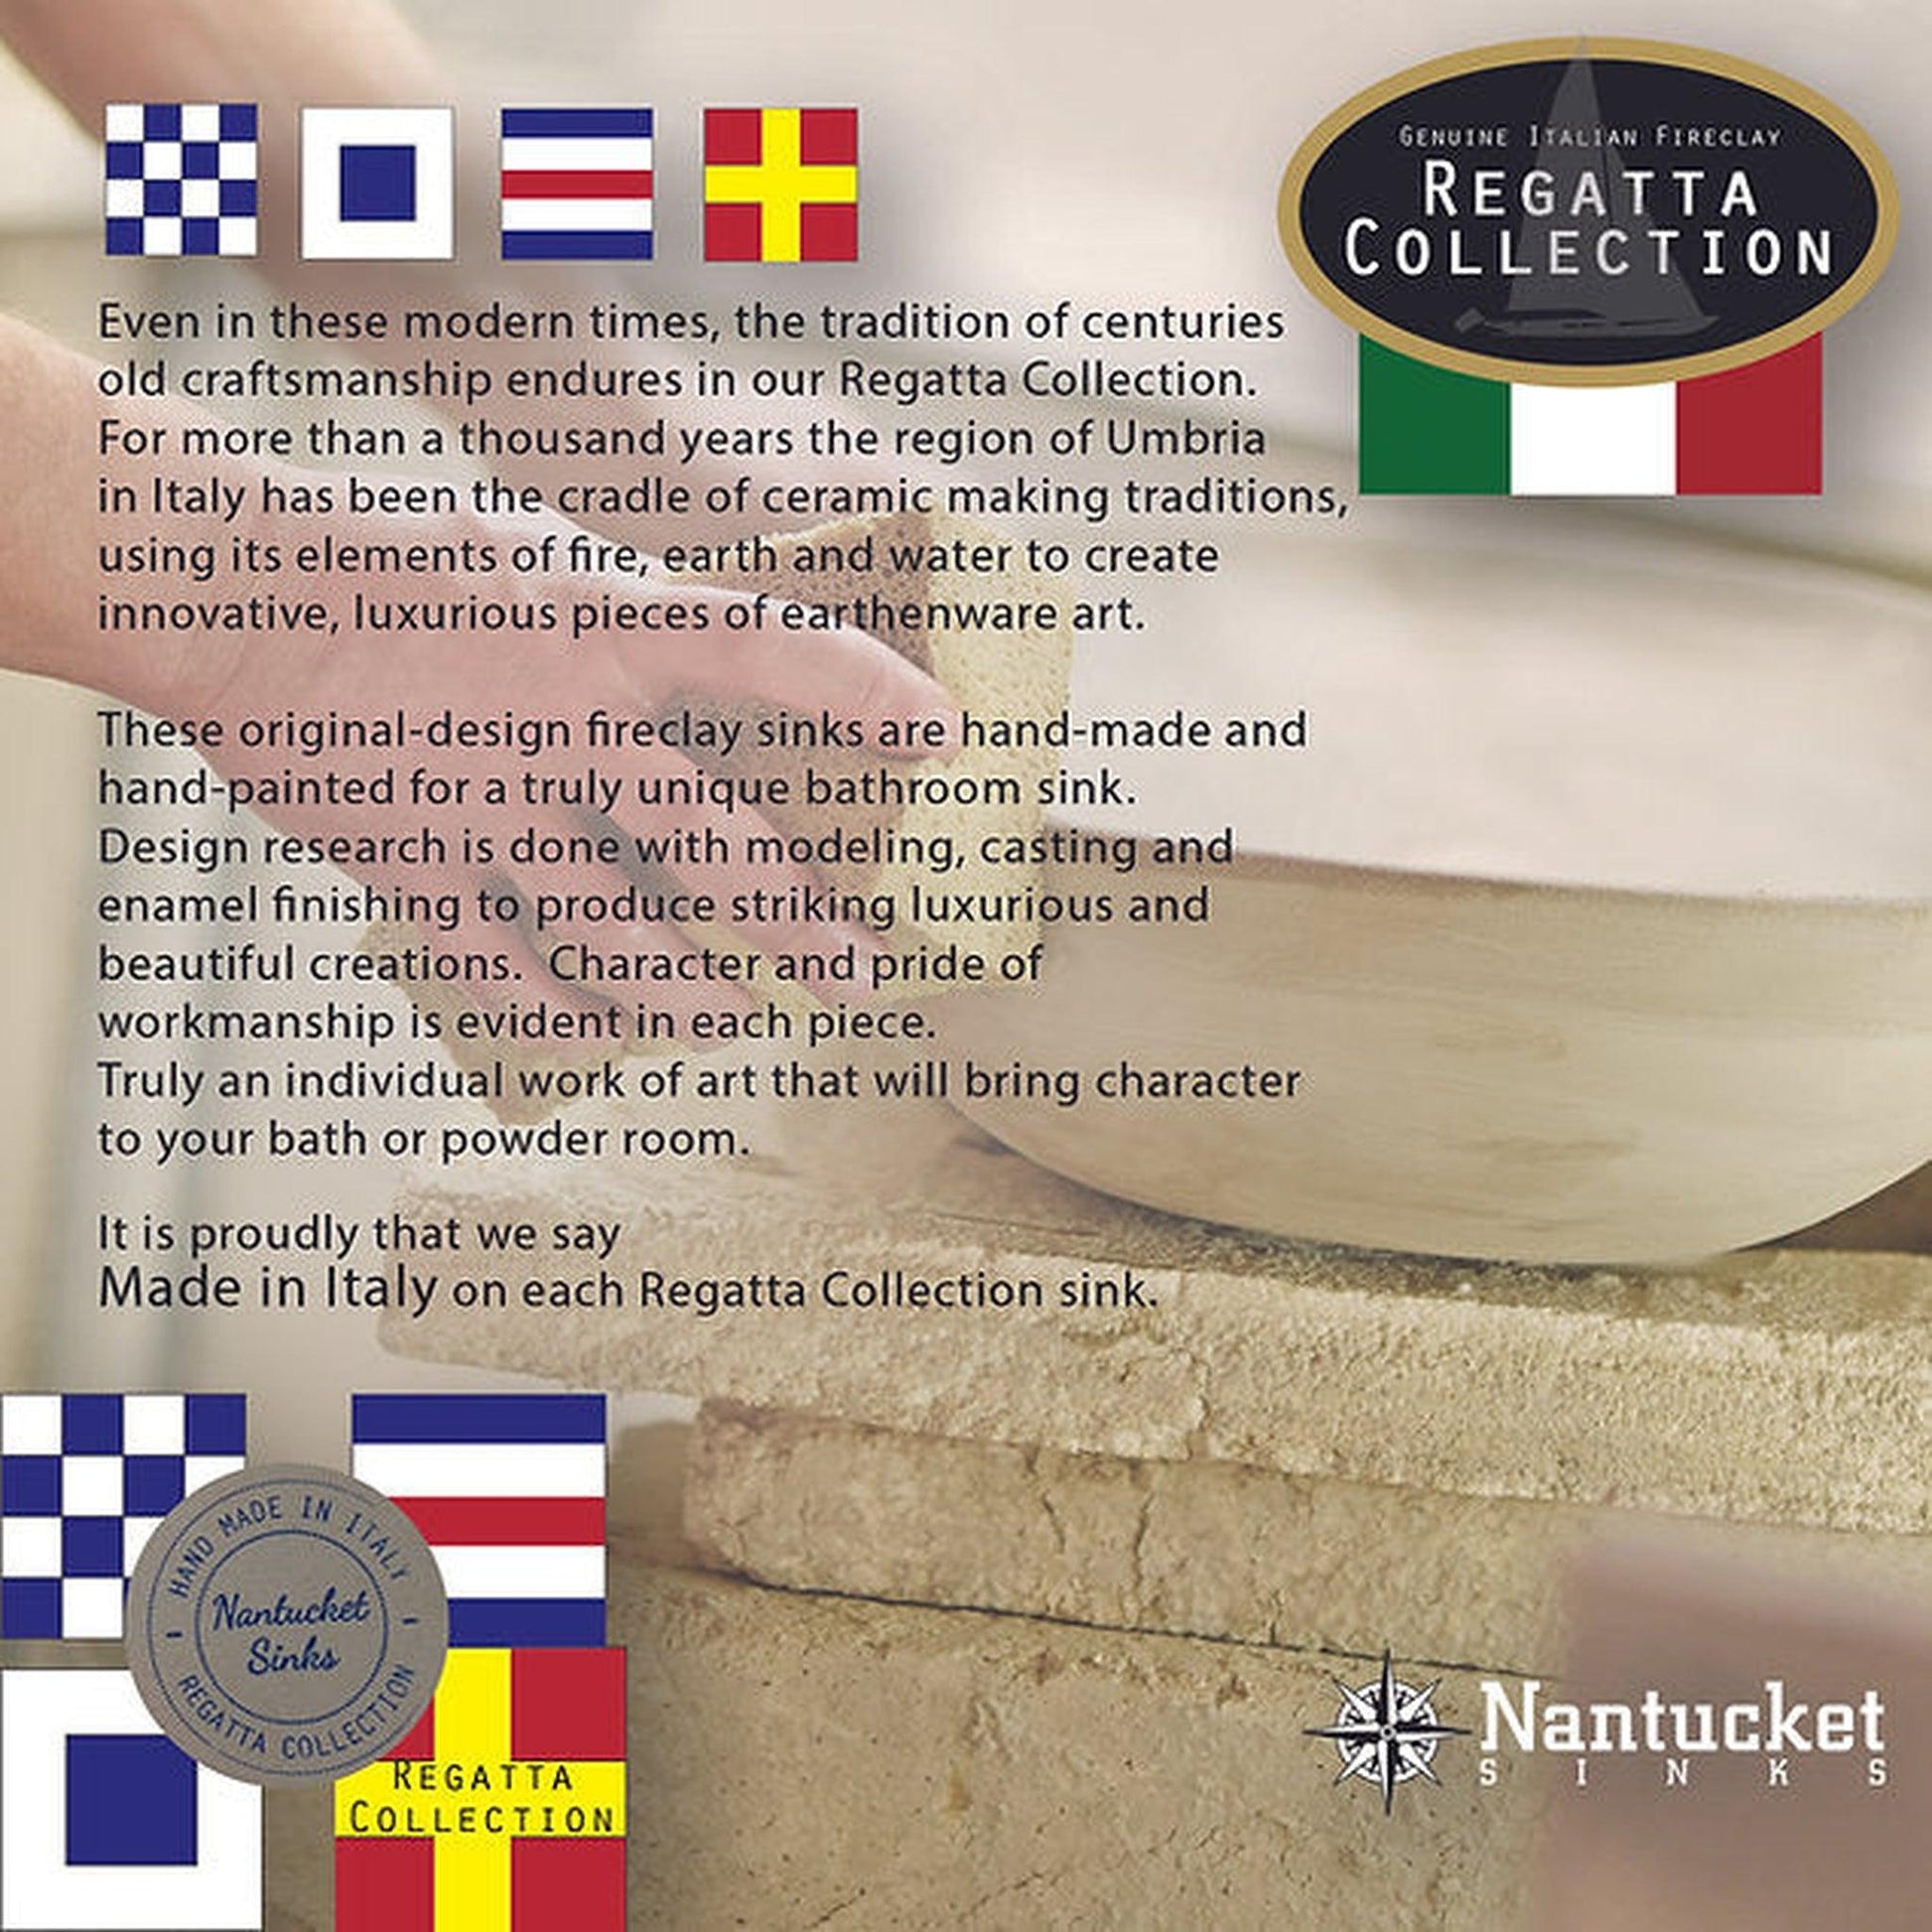 Nantucket Sinks Regatta 20" W x 16 D" St. Louis Italian Fireclay Oval Glazed Brown Drop-In Vanity Sink With Overflow